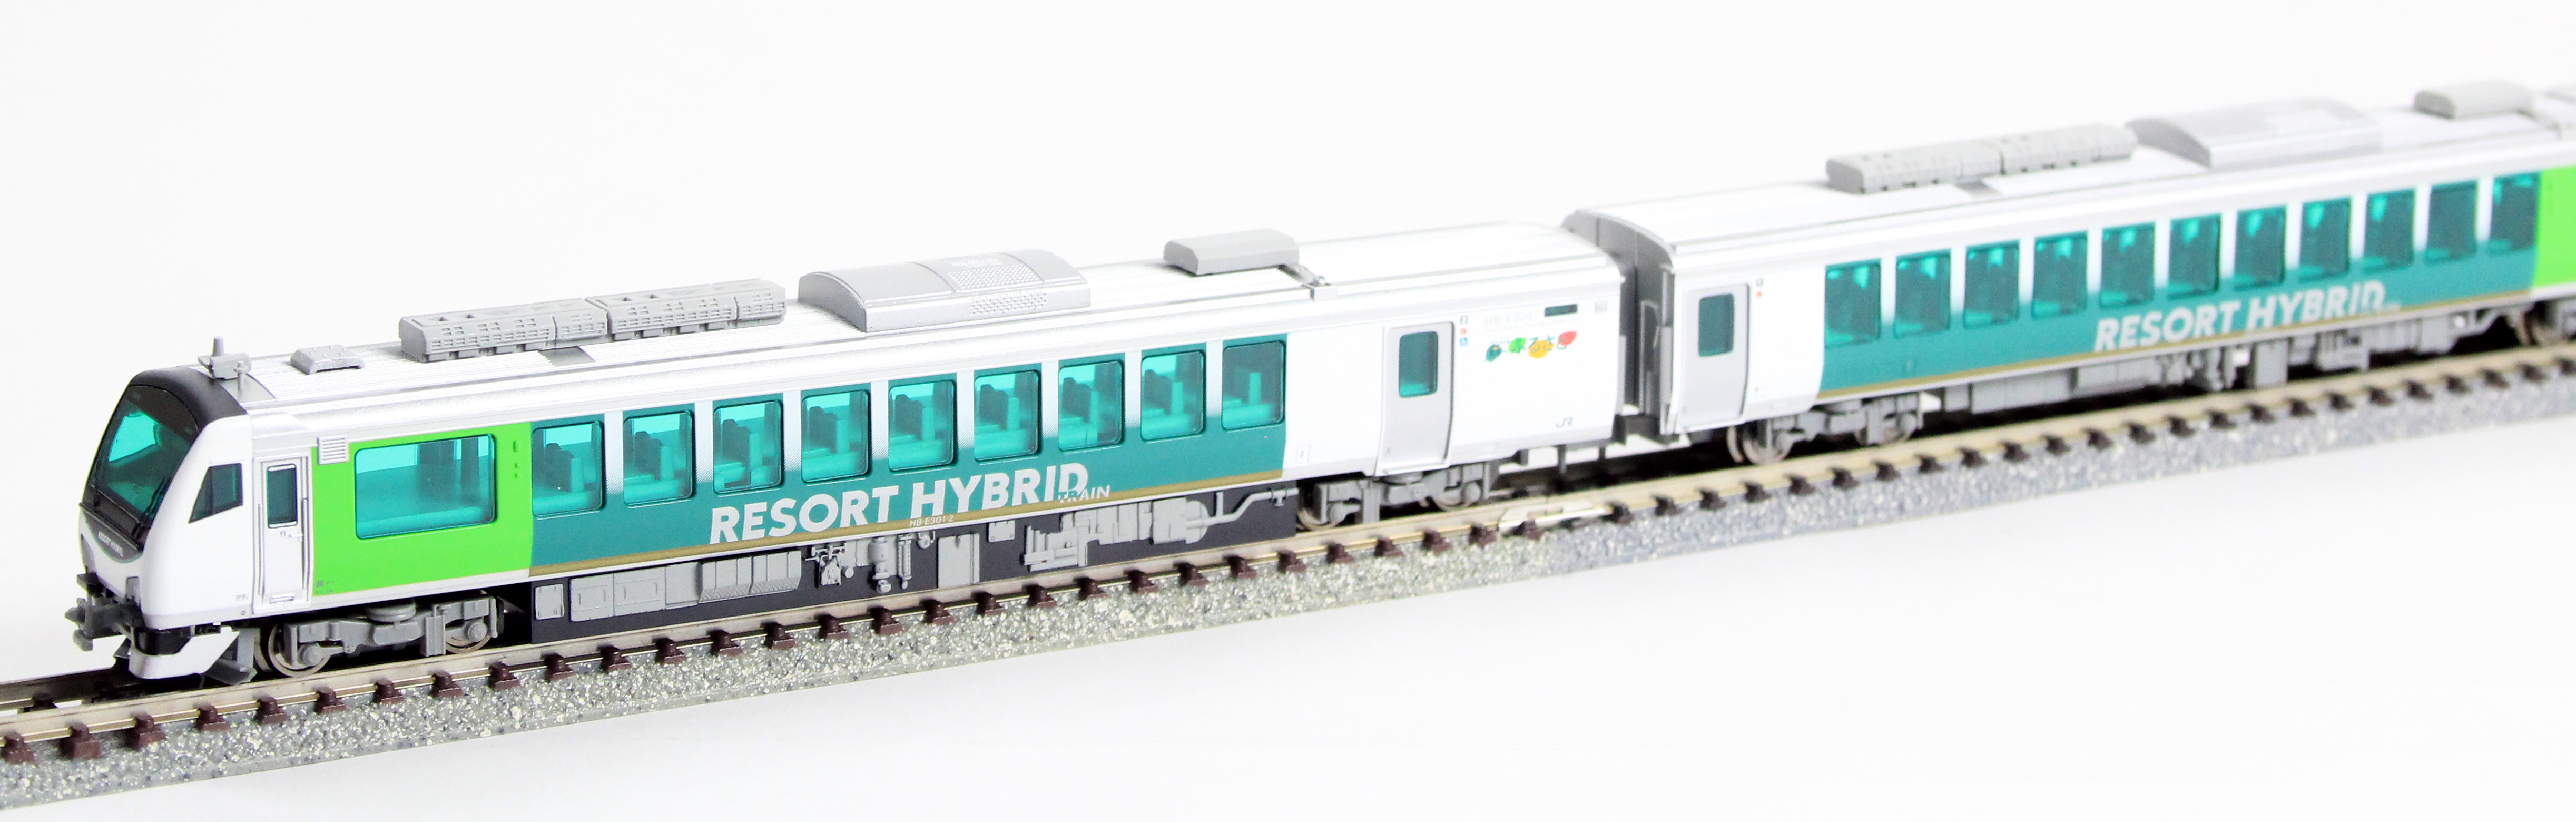 マイクロエース A9593 HB-E300 リゾートふるさと 2両セット 鉄道模型 N